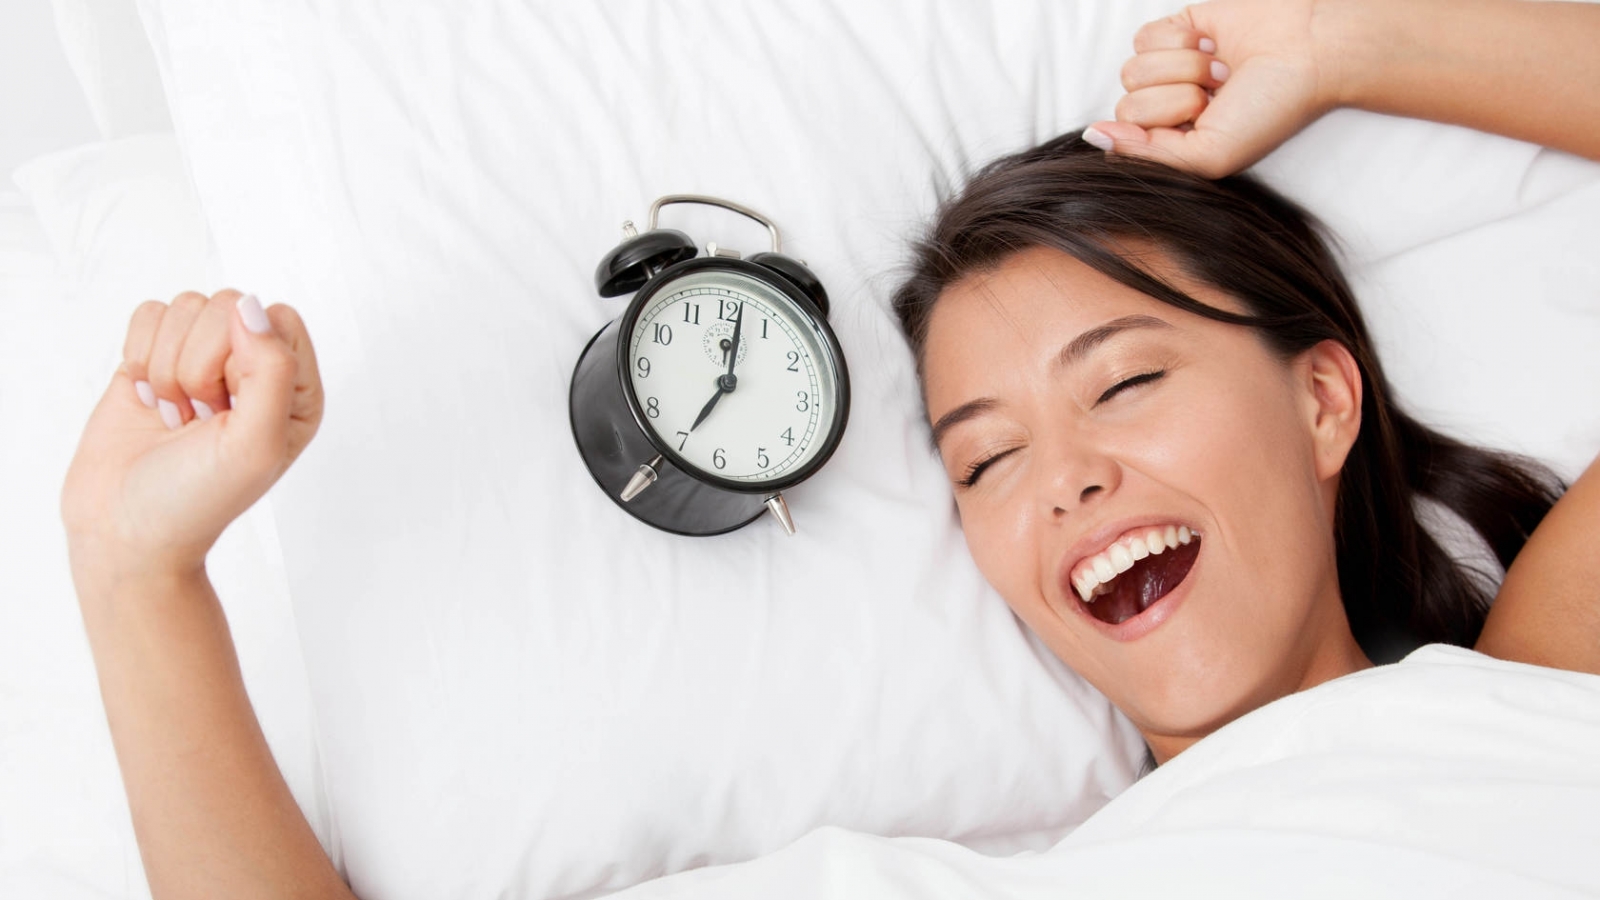 Американские ученые выяснили, как можно проснуться в хорошем настроении